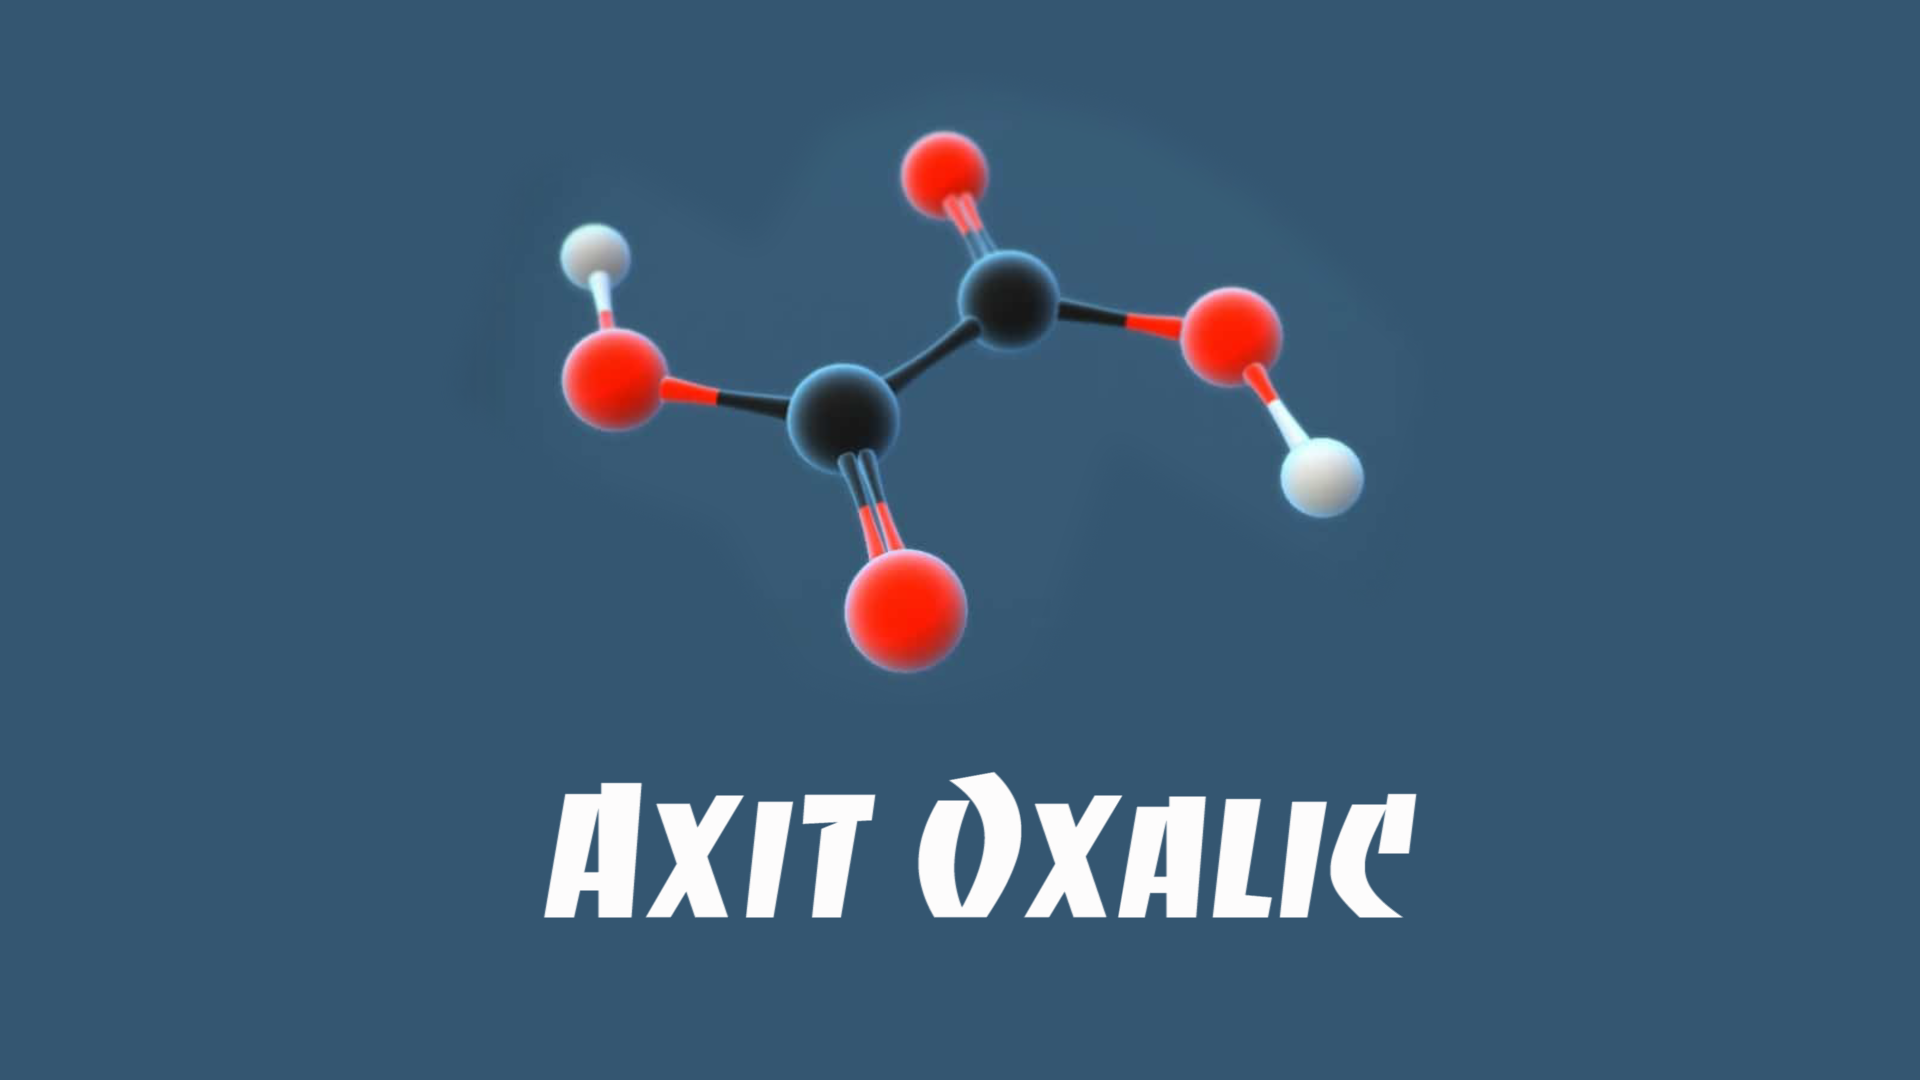 Tìm hiểu về axit oxalic công thức và những ứng dụng trong cuộc sống hàng ngày